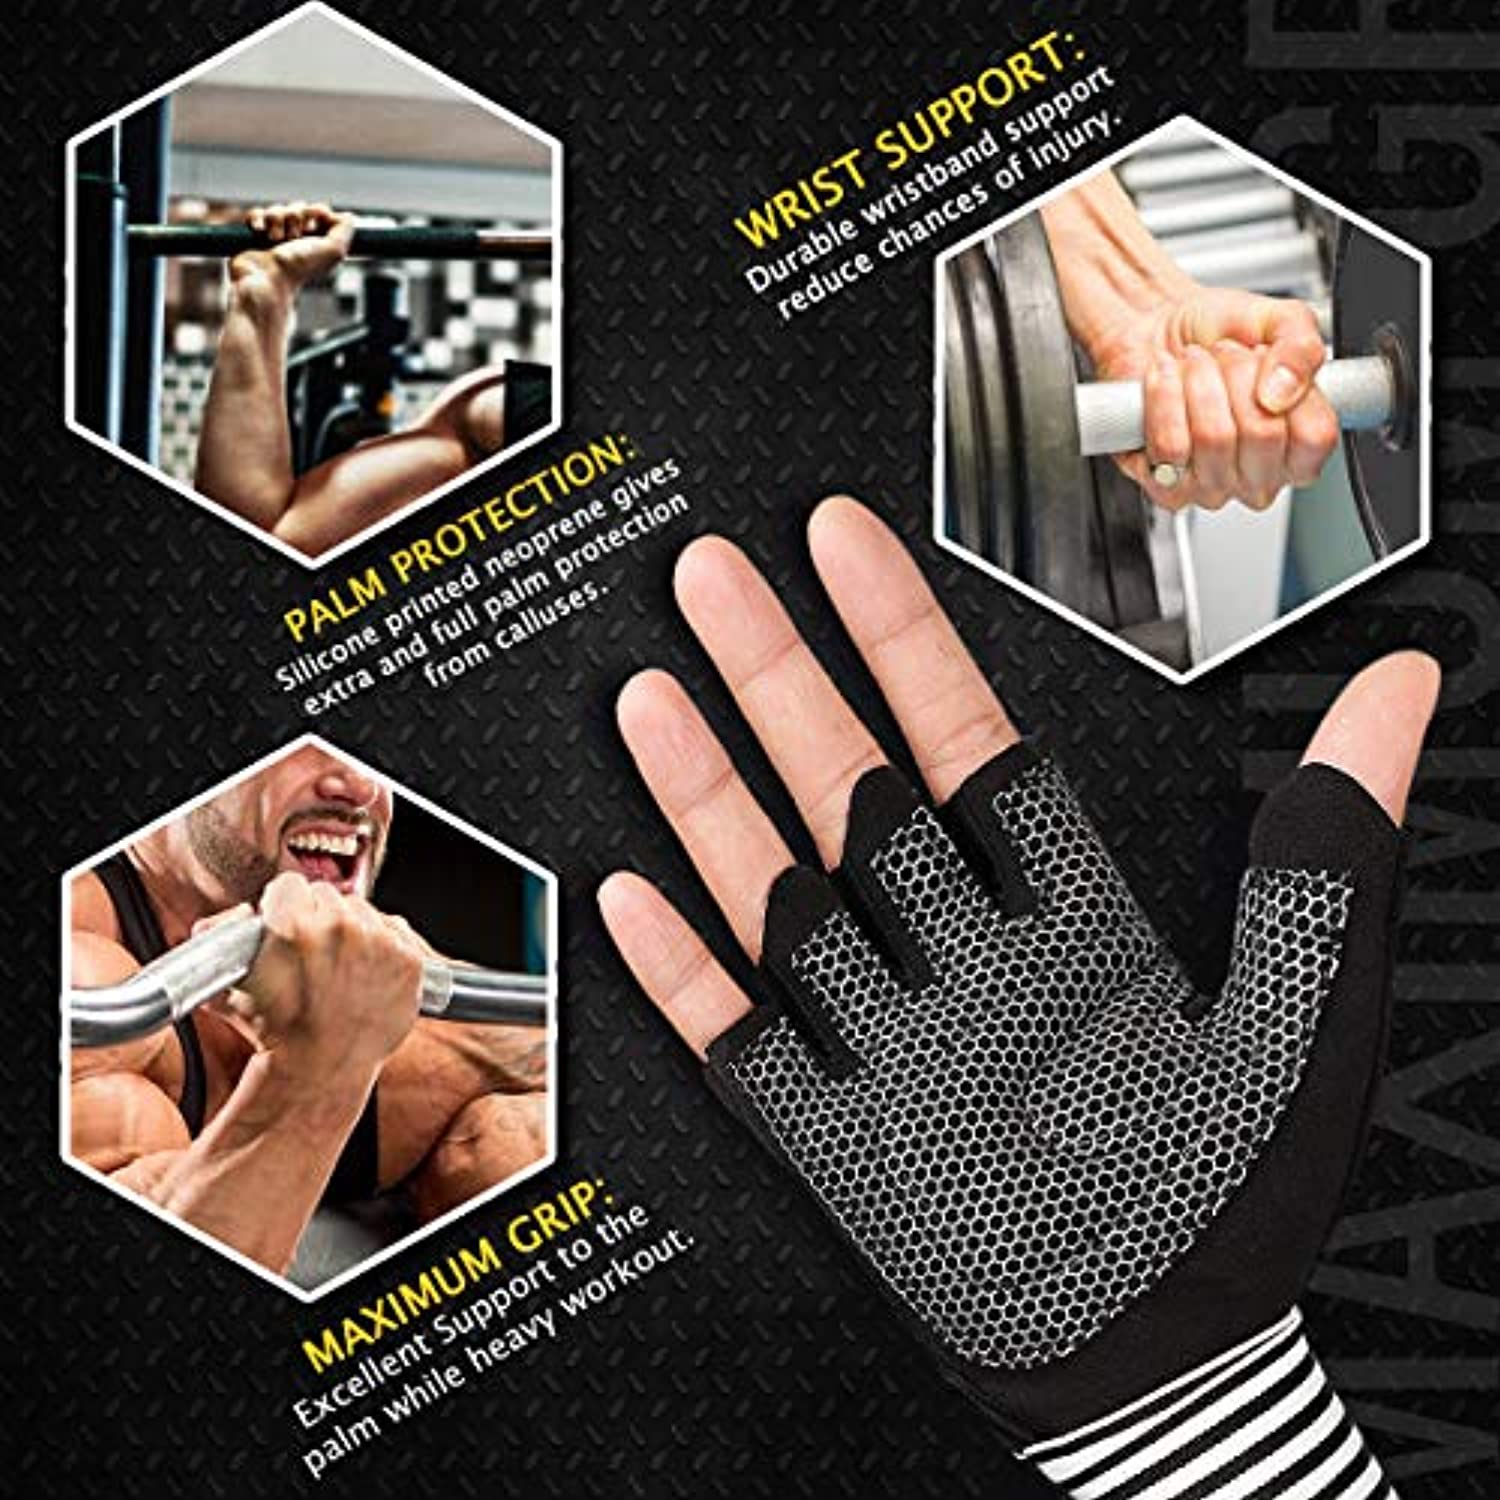 LIOOBO 1 par de guantes de levantamiento de pesas, protección completa de  la palma, agarre extra, guantes de levantamiento de pesas, suministros